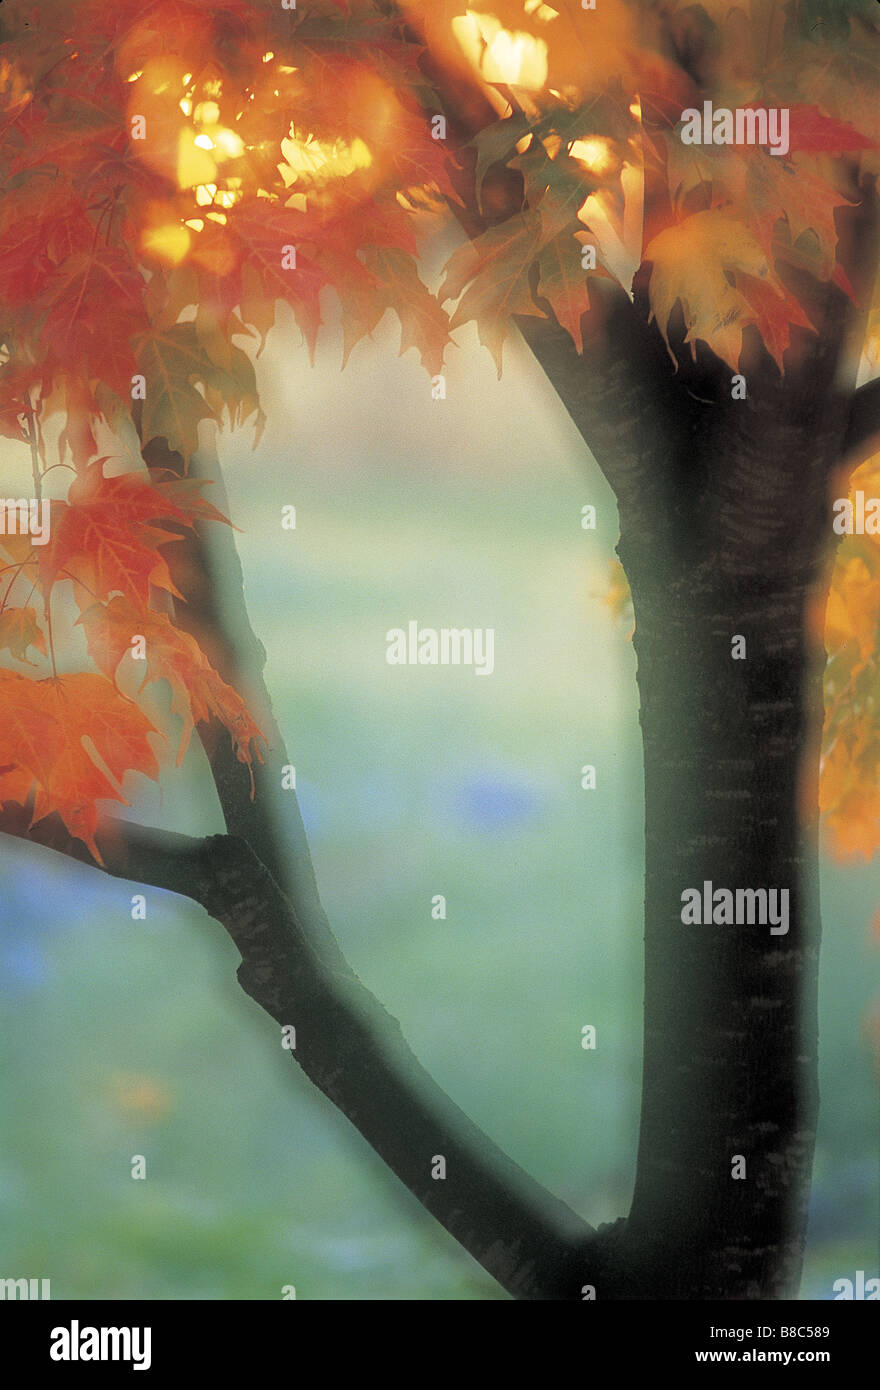 FL5551, David Nunuk; Autumn Maple Tree  Sunset, Soft Focus Stock Photo